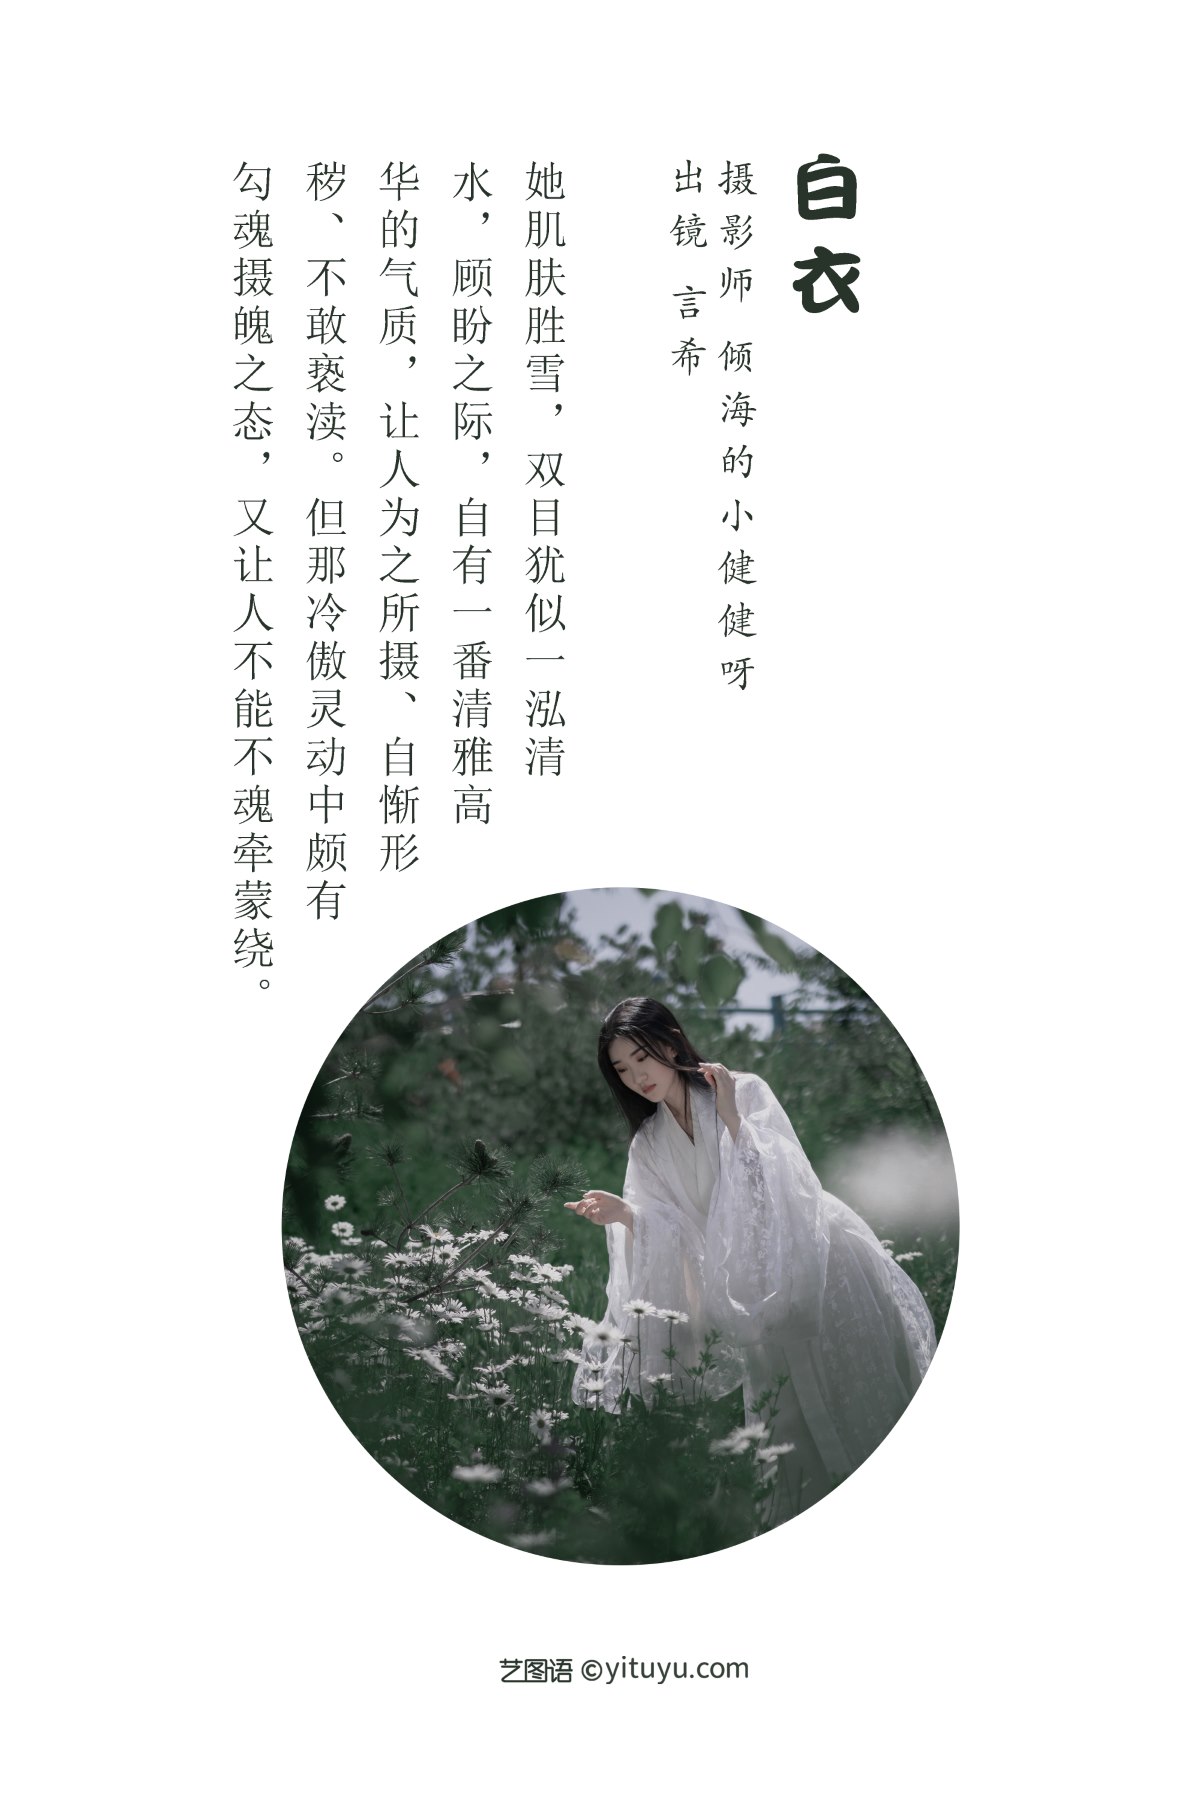 YiTuYu艺图语 Vol 1988 Xiang Wang Hui Shou Miao Miao Miao 0001 0891523677.jpg